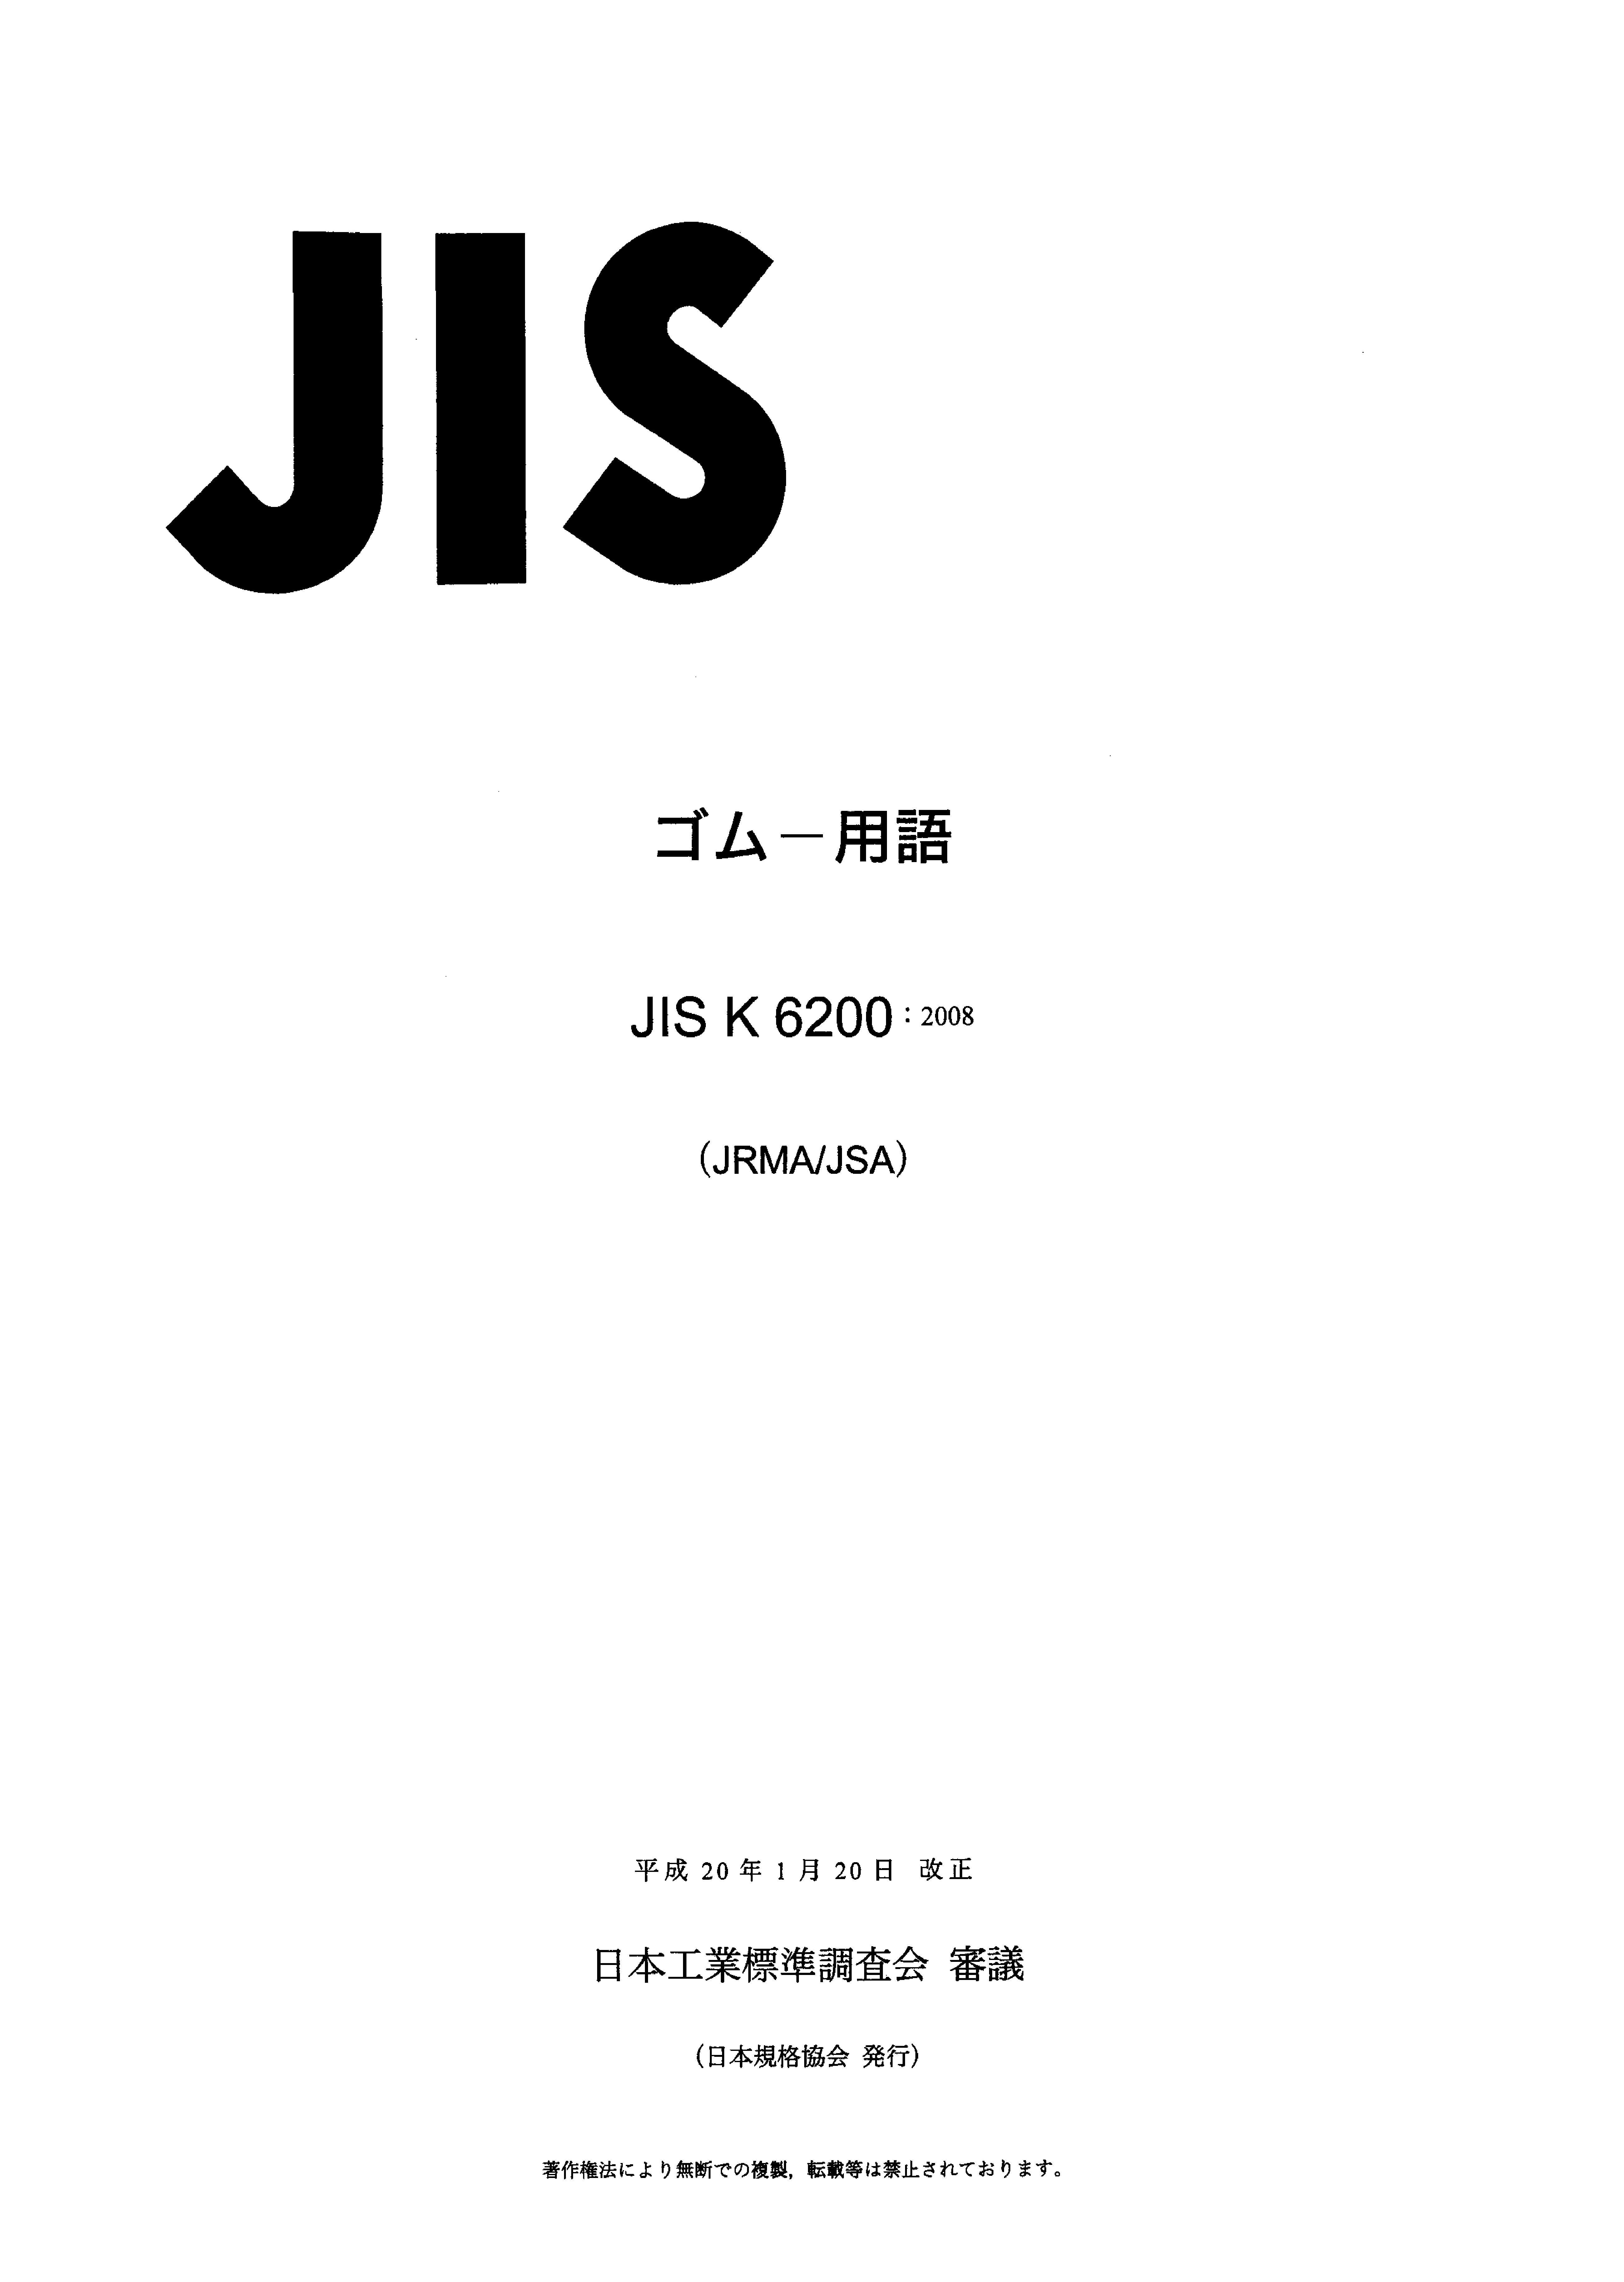 JIS K 6200:2008封面图